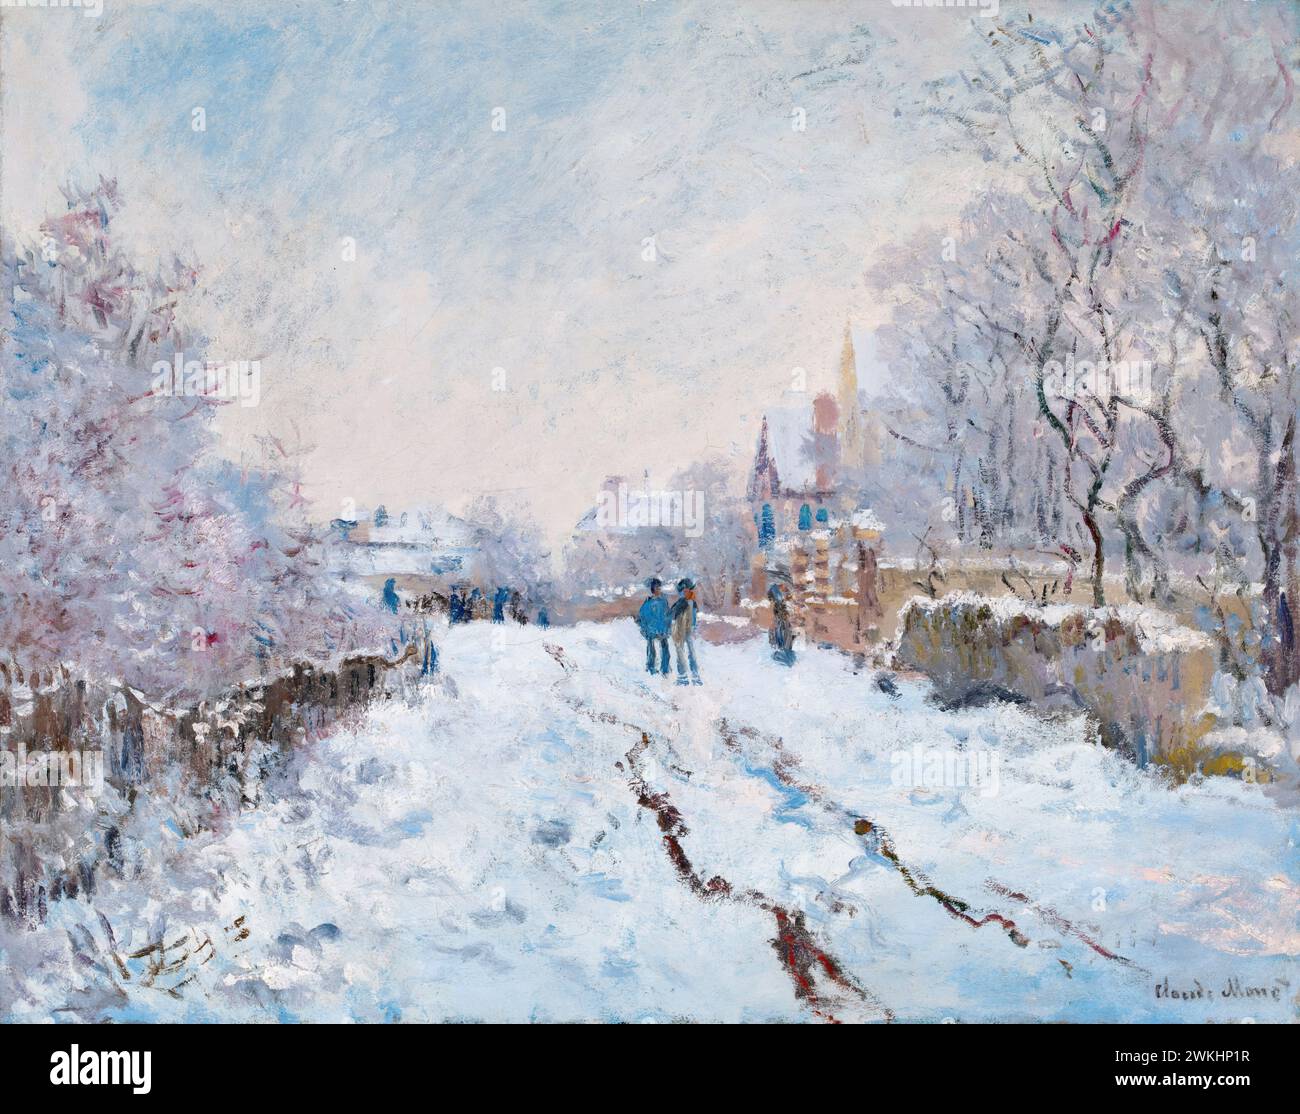 Claude Monet, scène de neige à Argenteuil, peinture de paysage à l'huile sur toile, 1875 Banque D'Images